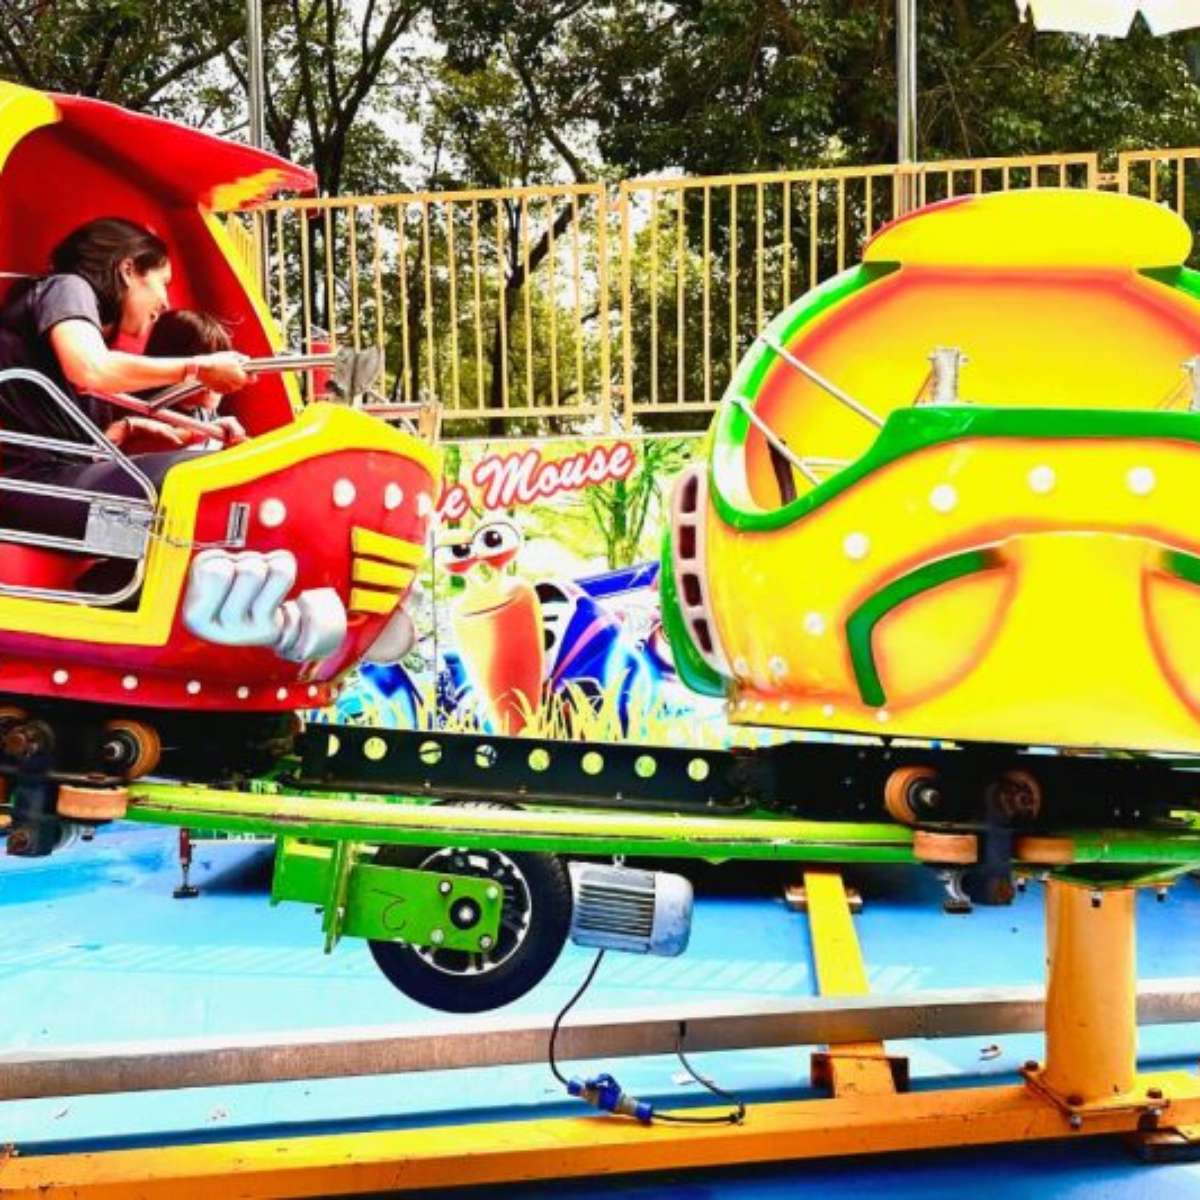 Criançada se diverte com jogos populares no Parque da Sementeira, IMD